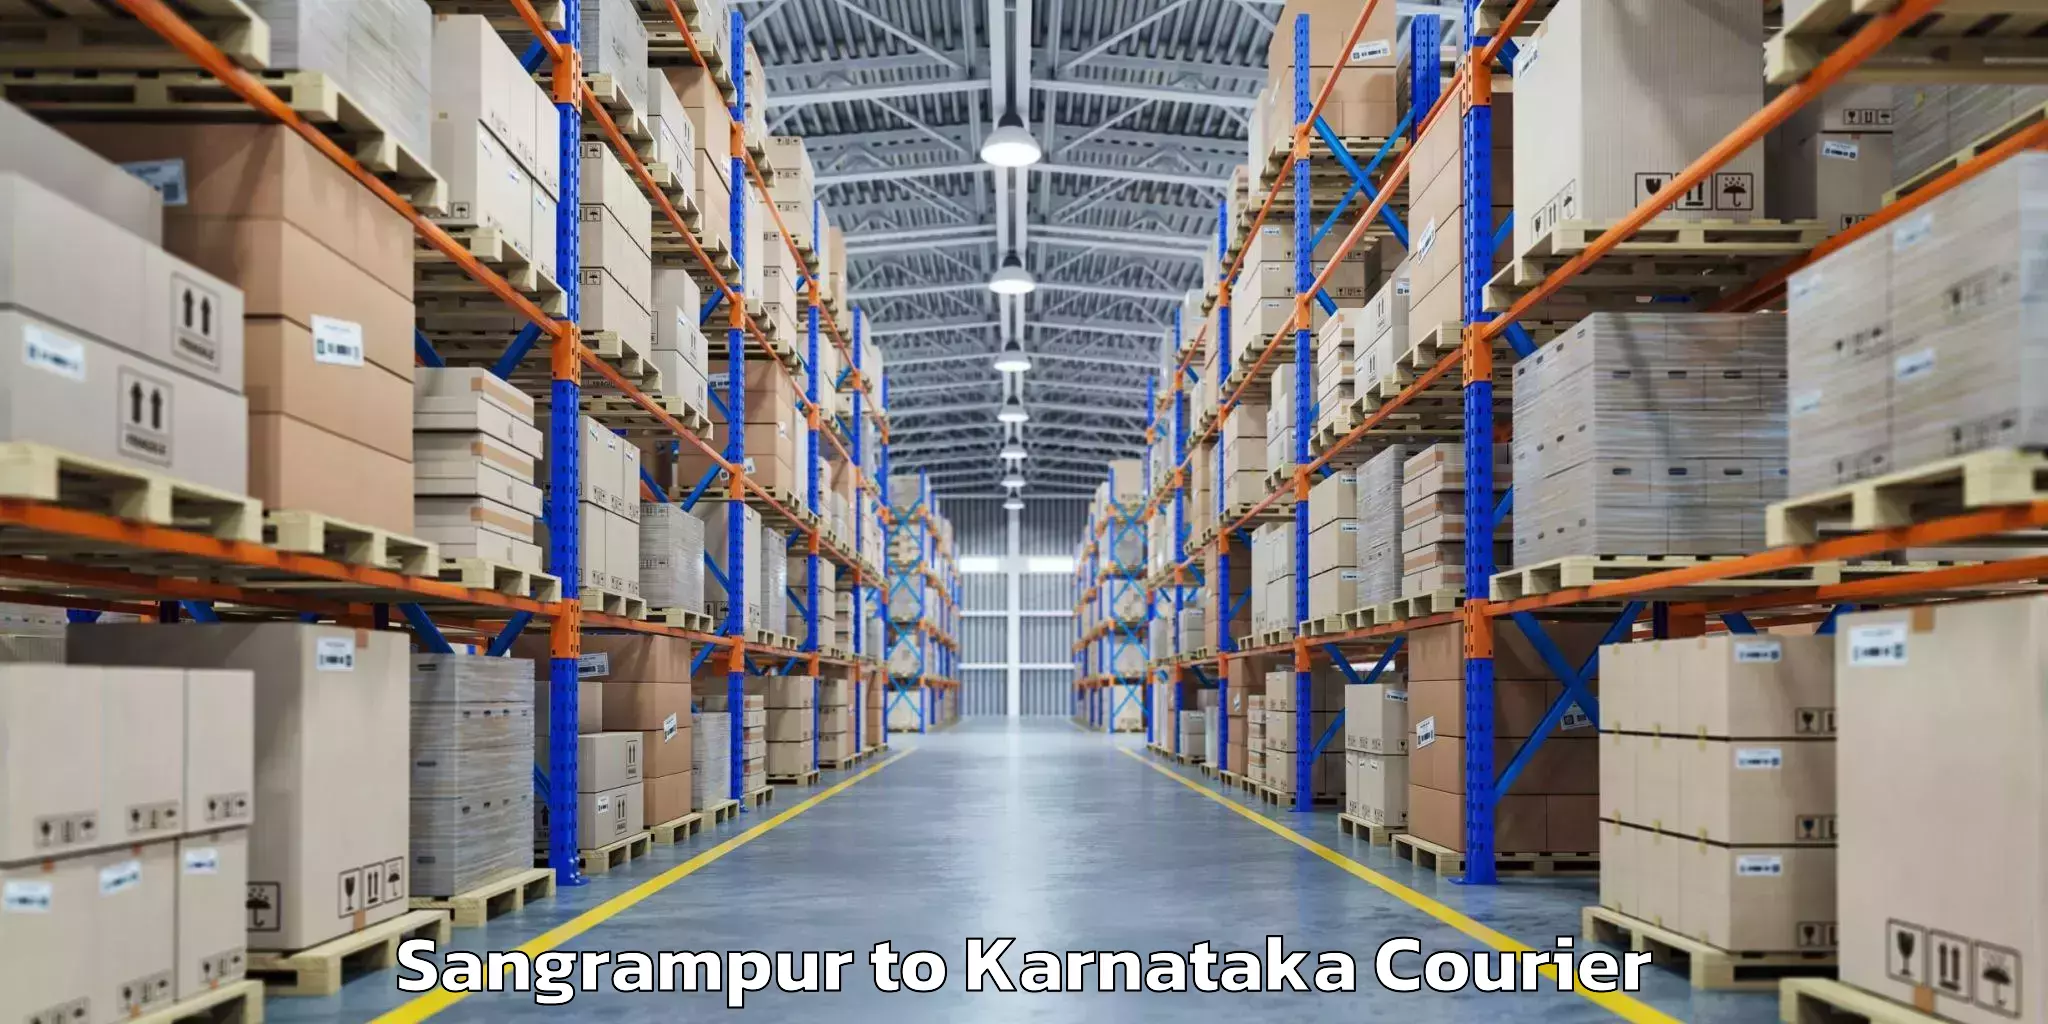 Baggage shipping optimization in Sangrampur to Karnataka